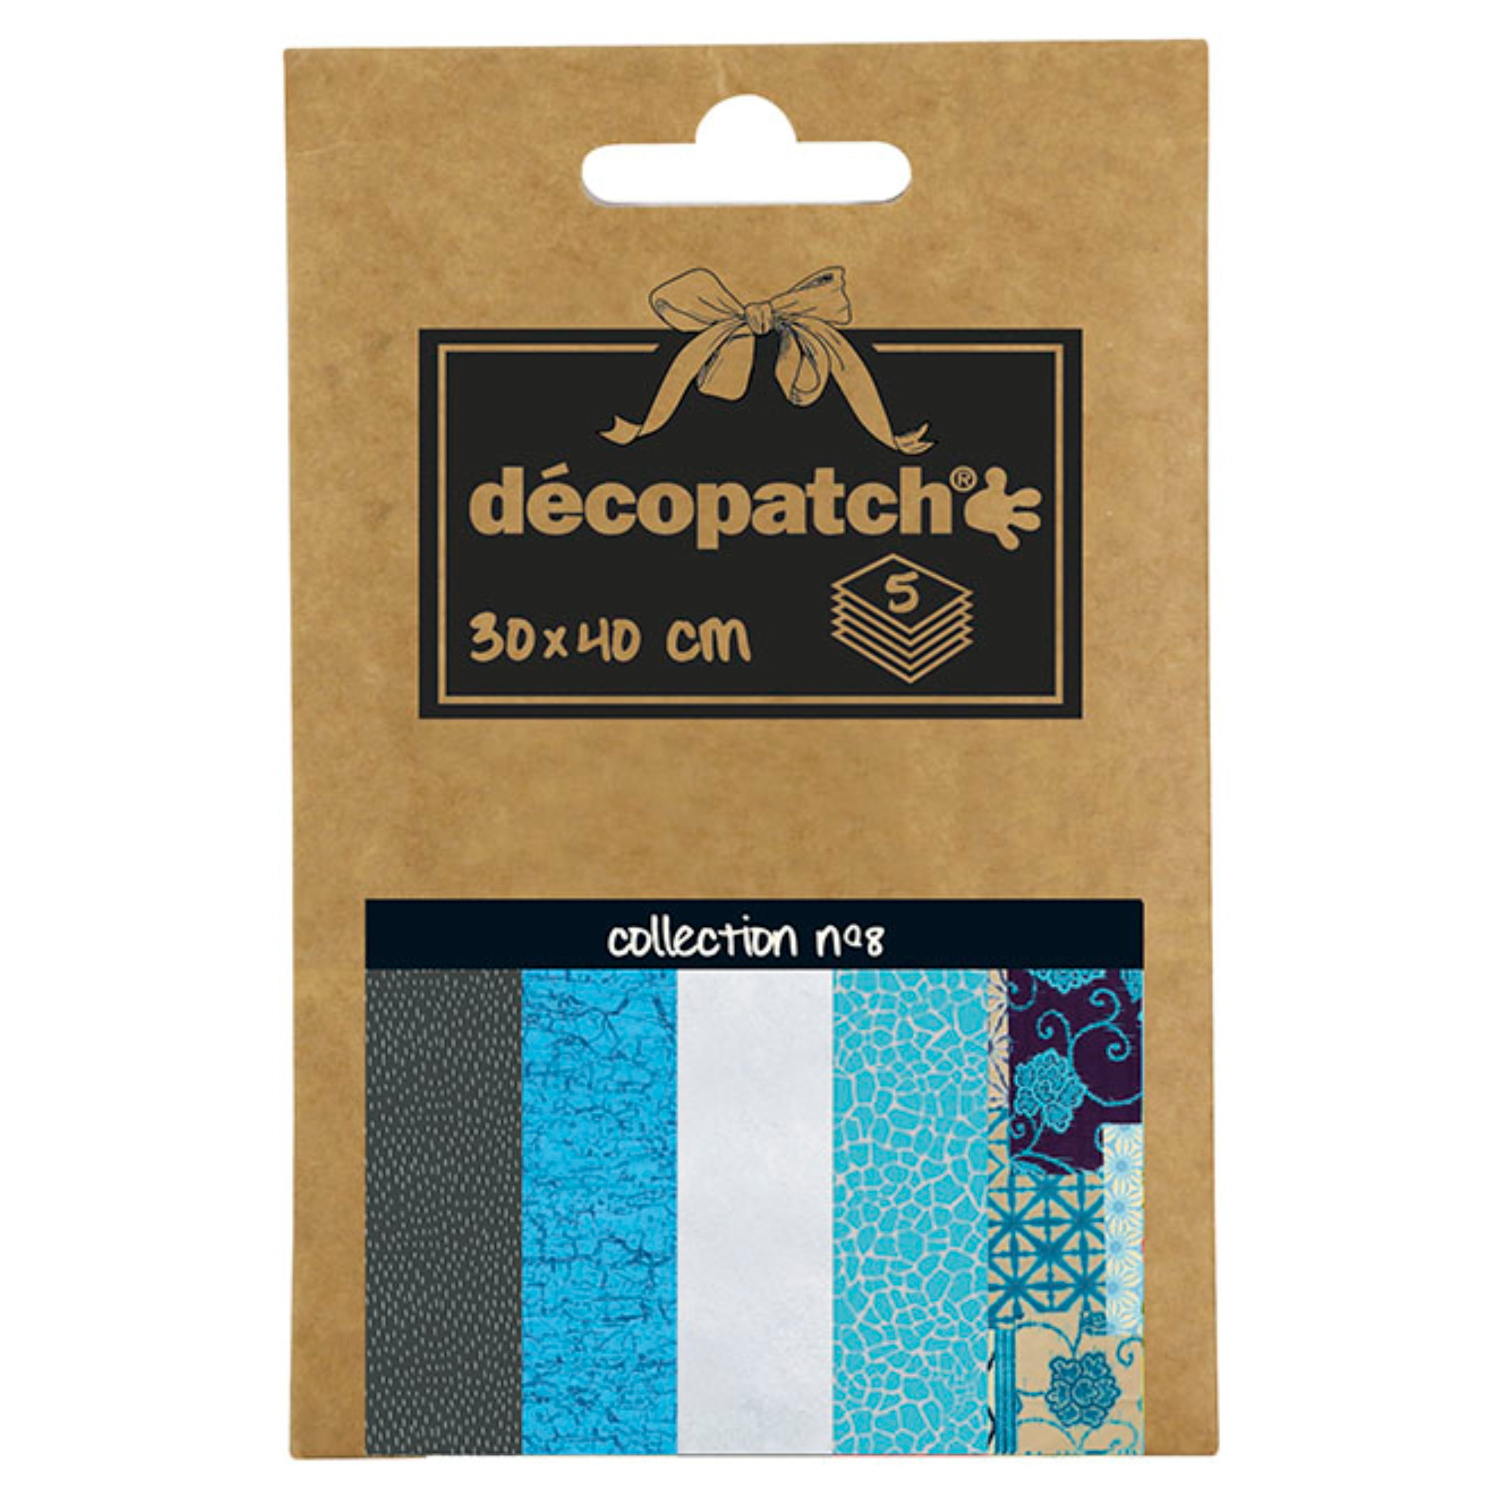 NEU Decoupage- / Decopatch-Papier Pocket-Sortierung, 5 Bogen 30 x 40 cm, Motive: 665, 302, 503, 537, 722